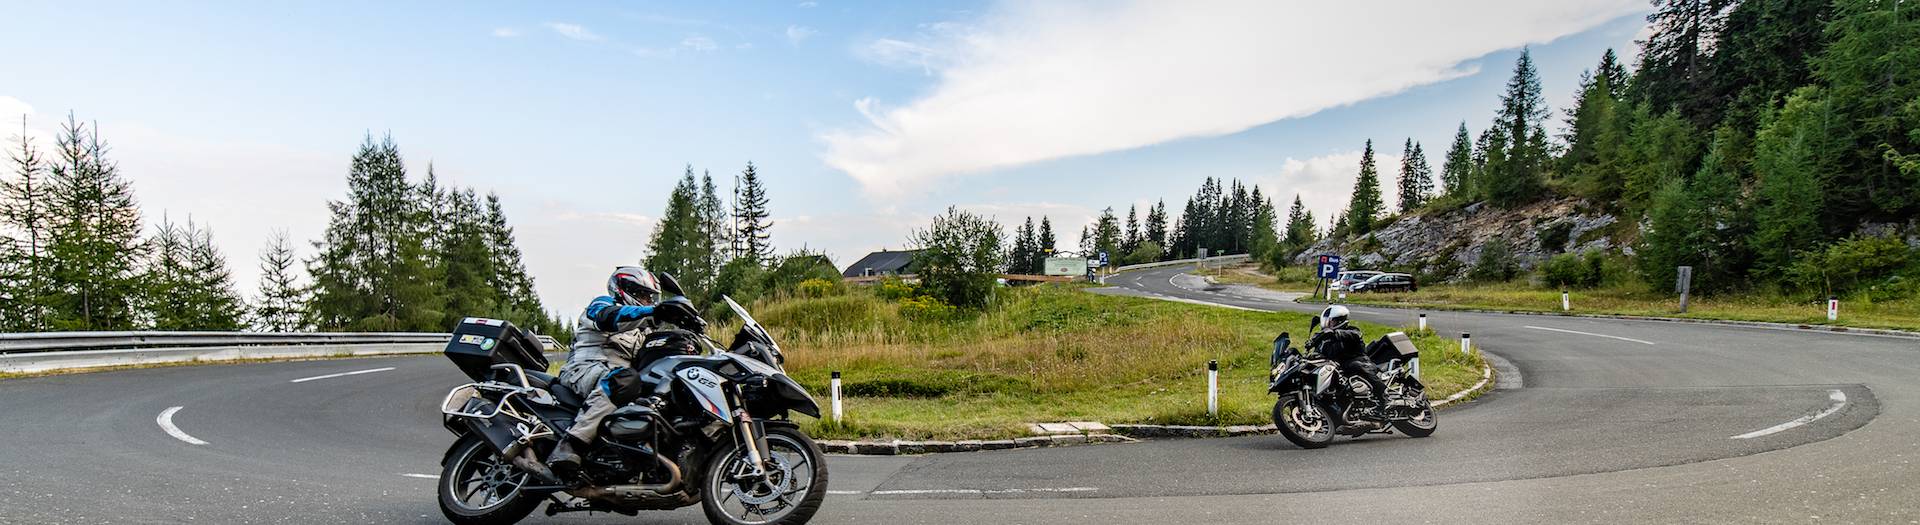 Motorradland Kärnten, Villacher Alpenstrasse